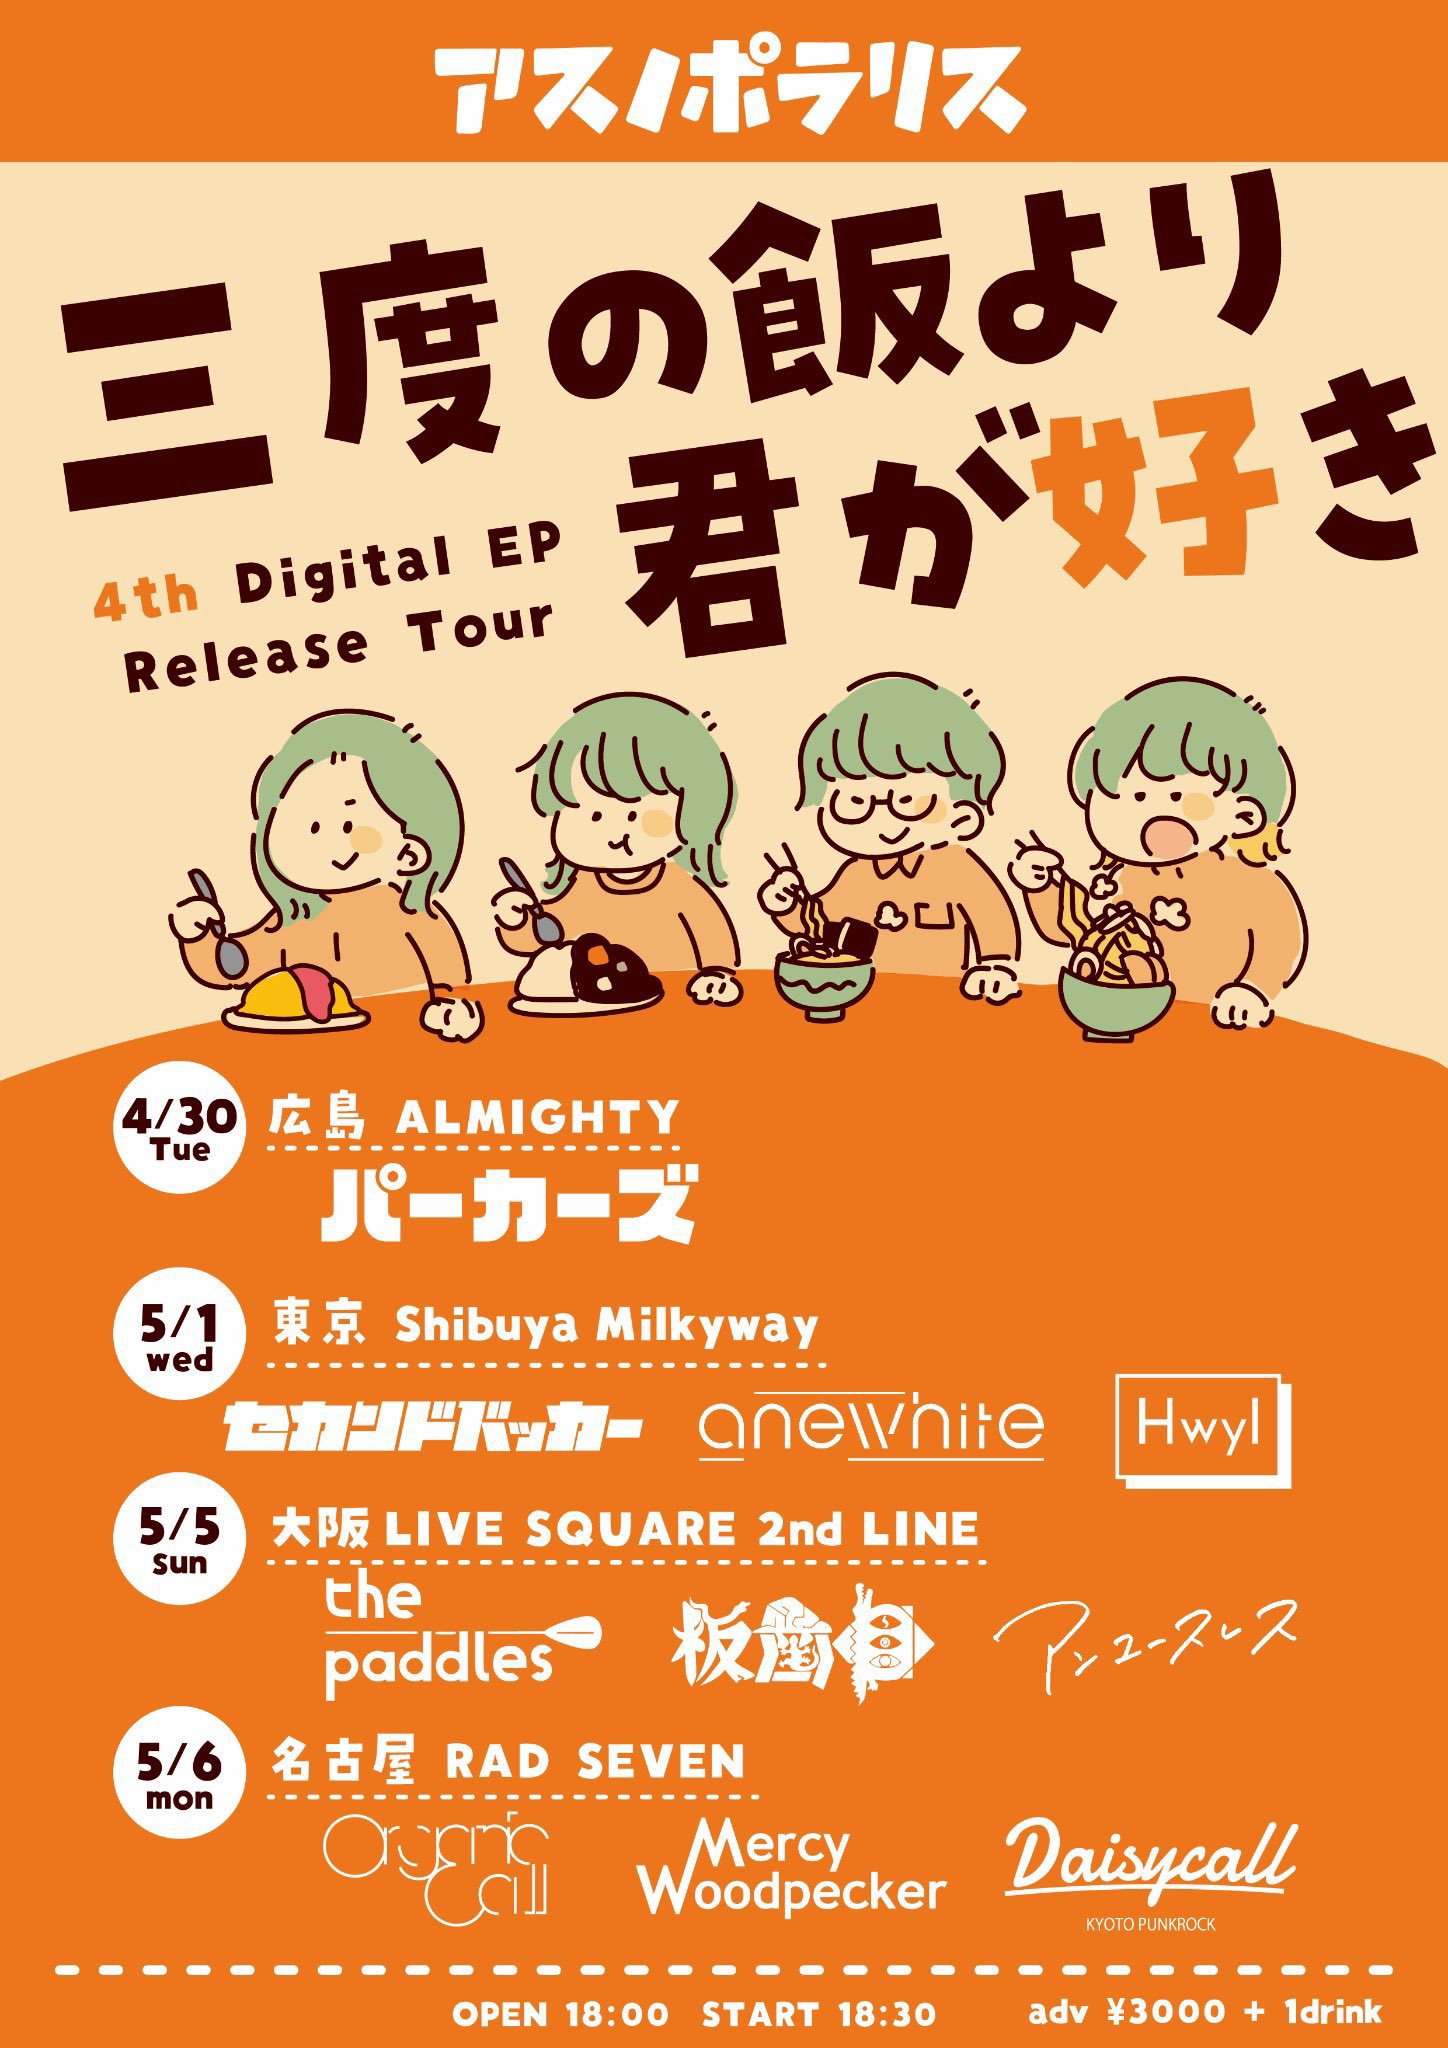 アスノポラリス4th digital EP 『三度の飯より君が好き』 release tour